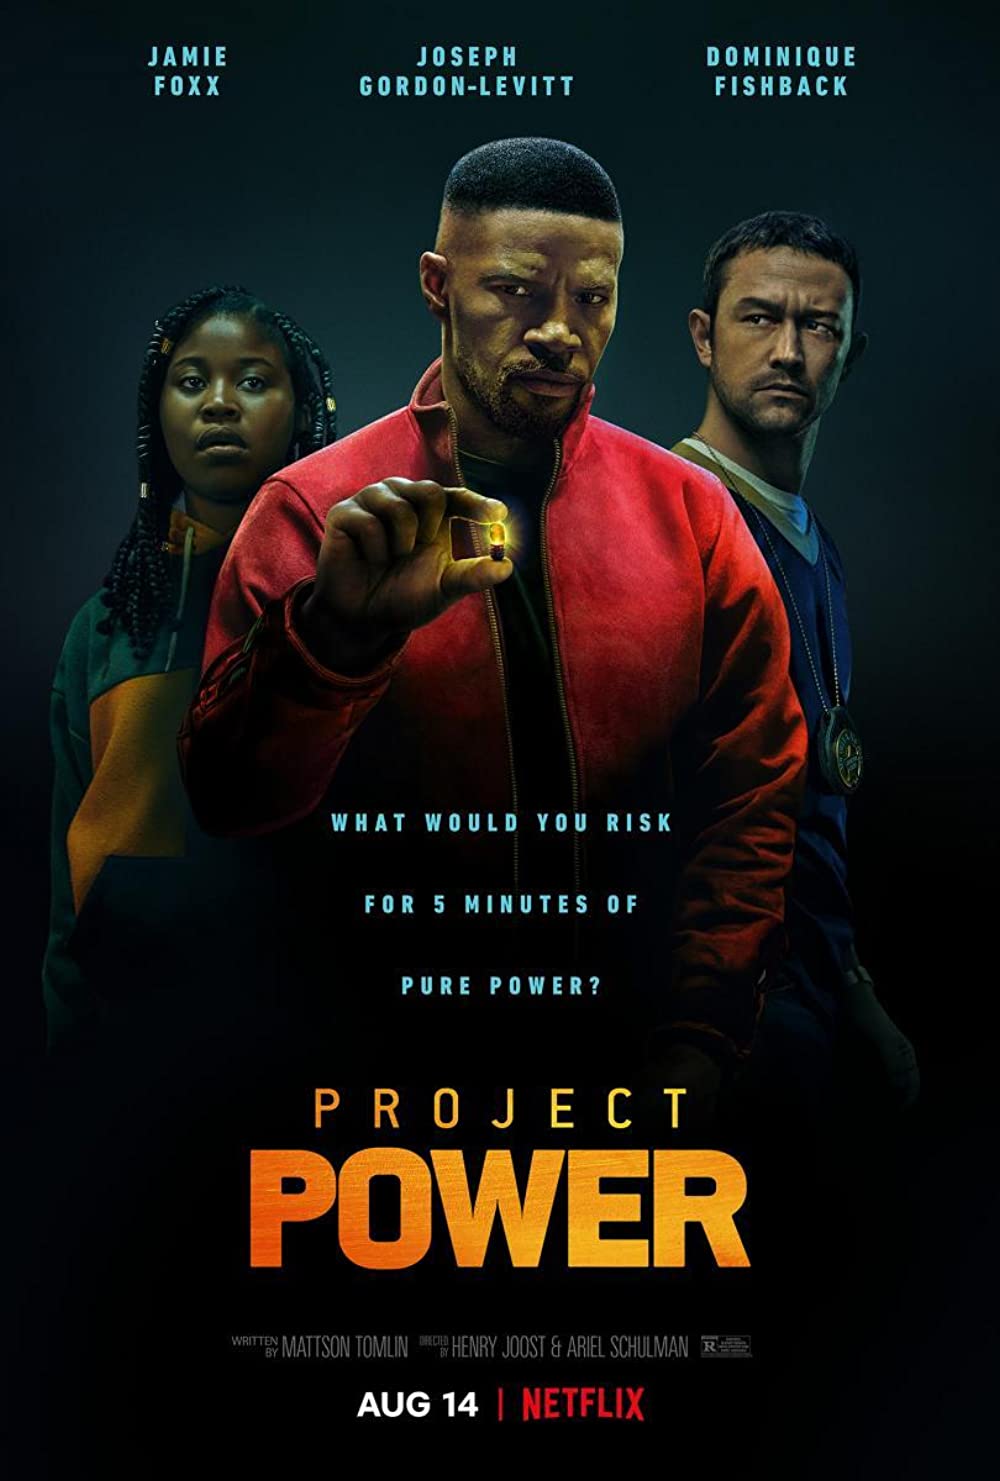 Filmbeschreibung zu Project Power